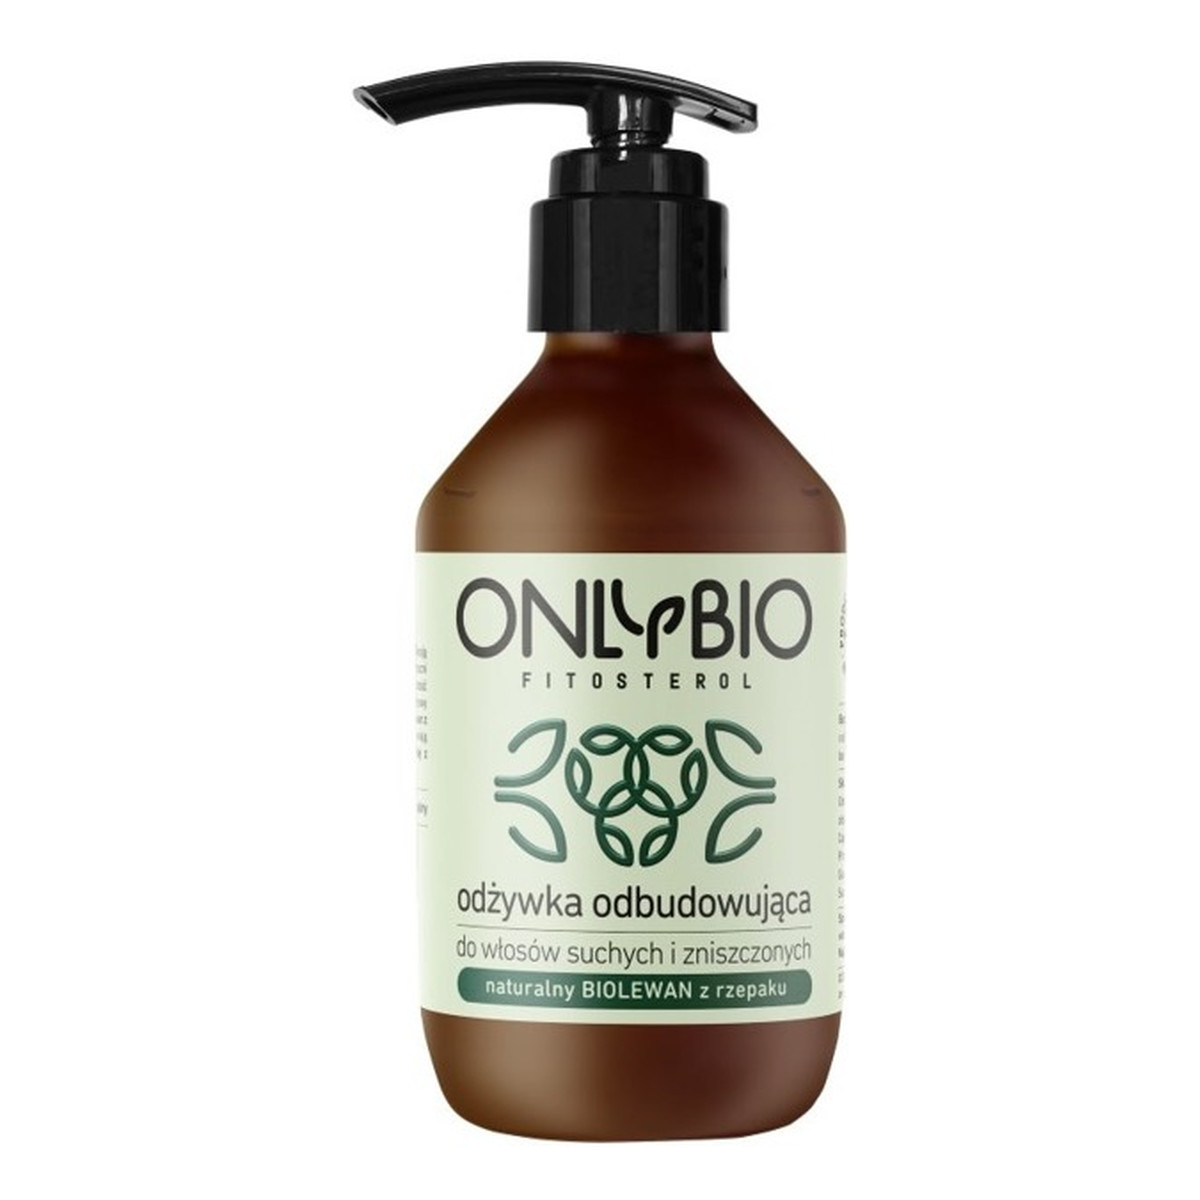 OnlyBio Fitosterol odżywka odbudowująca do włosów suchych i zniszczonych z olejem z sezamu 250ml